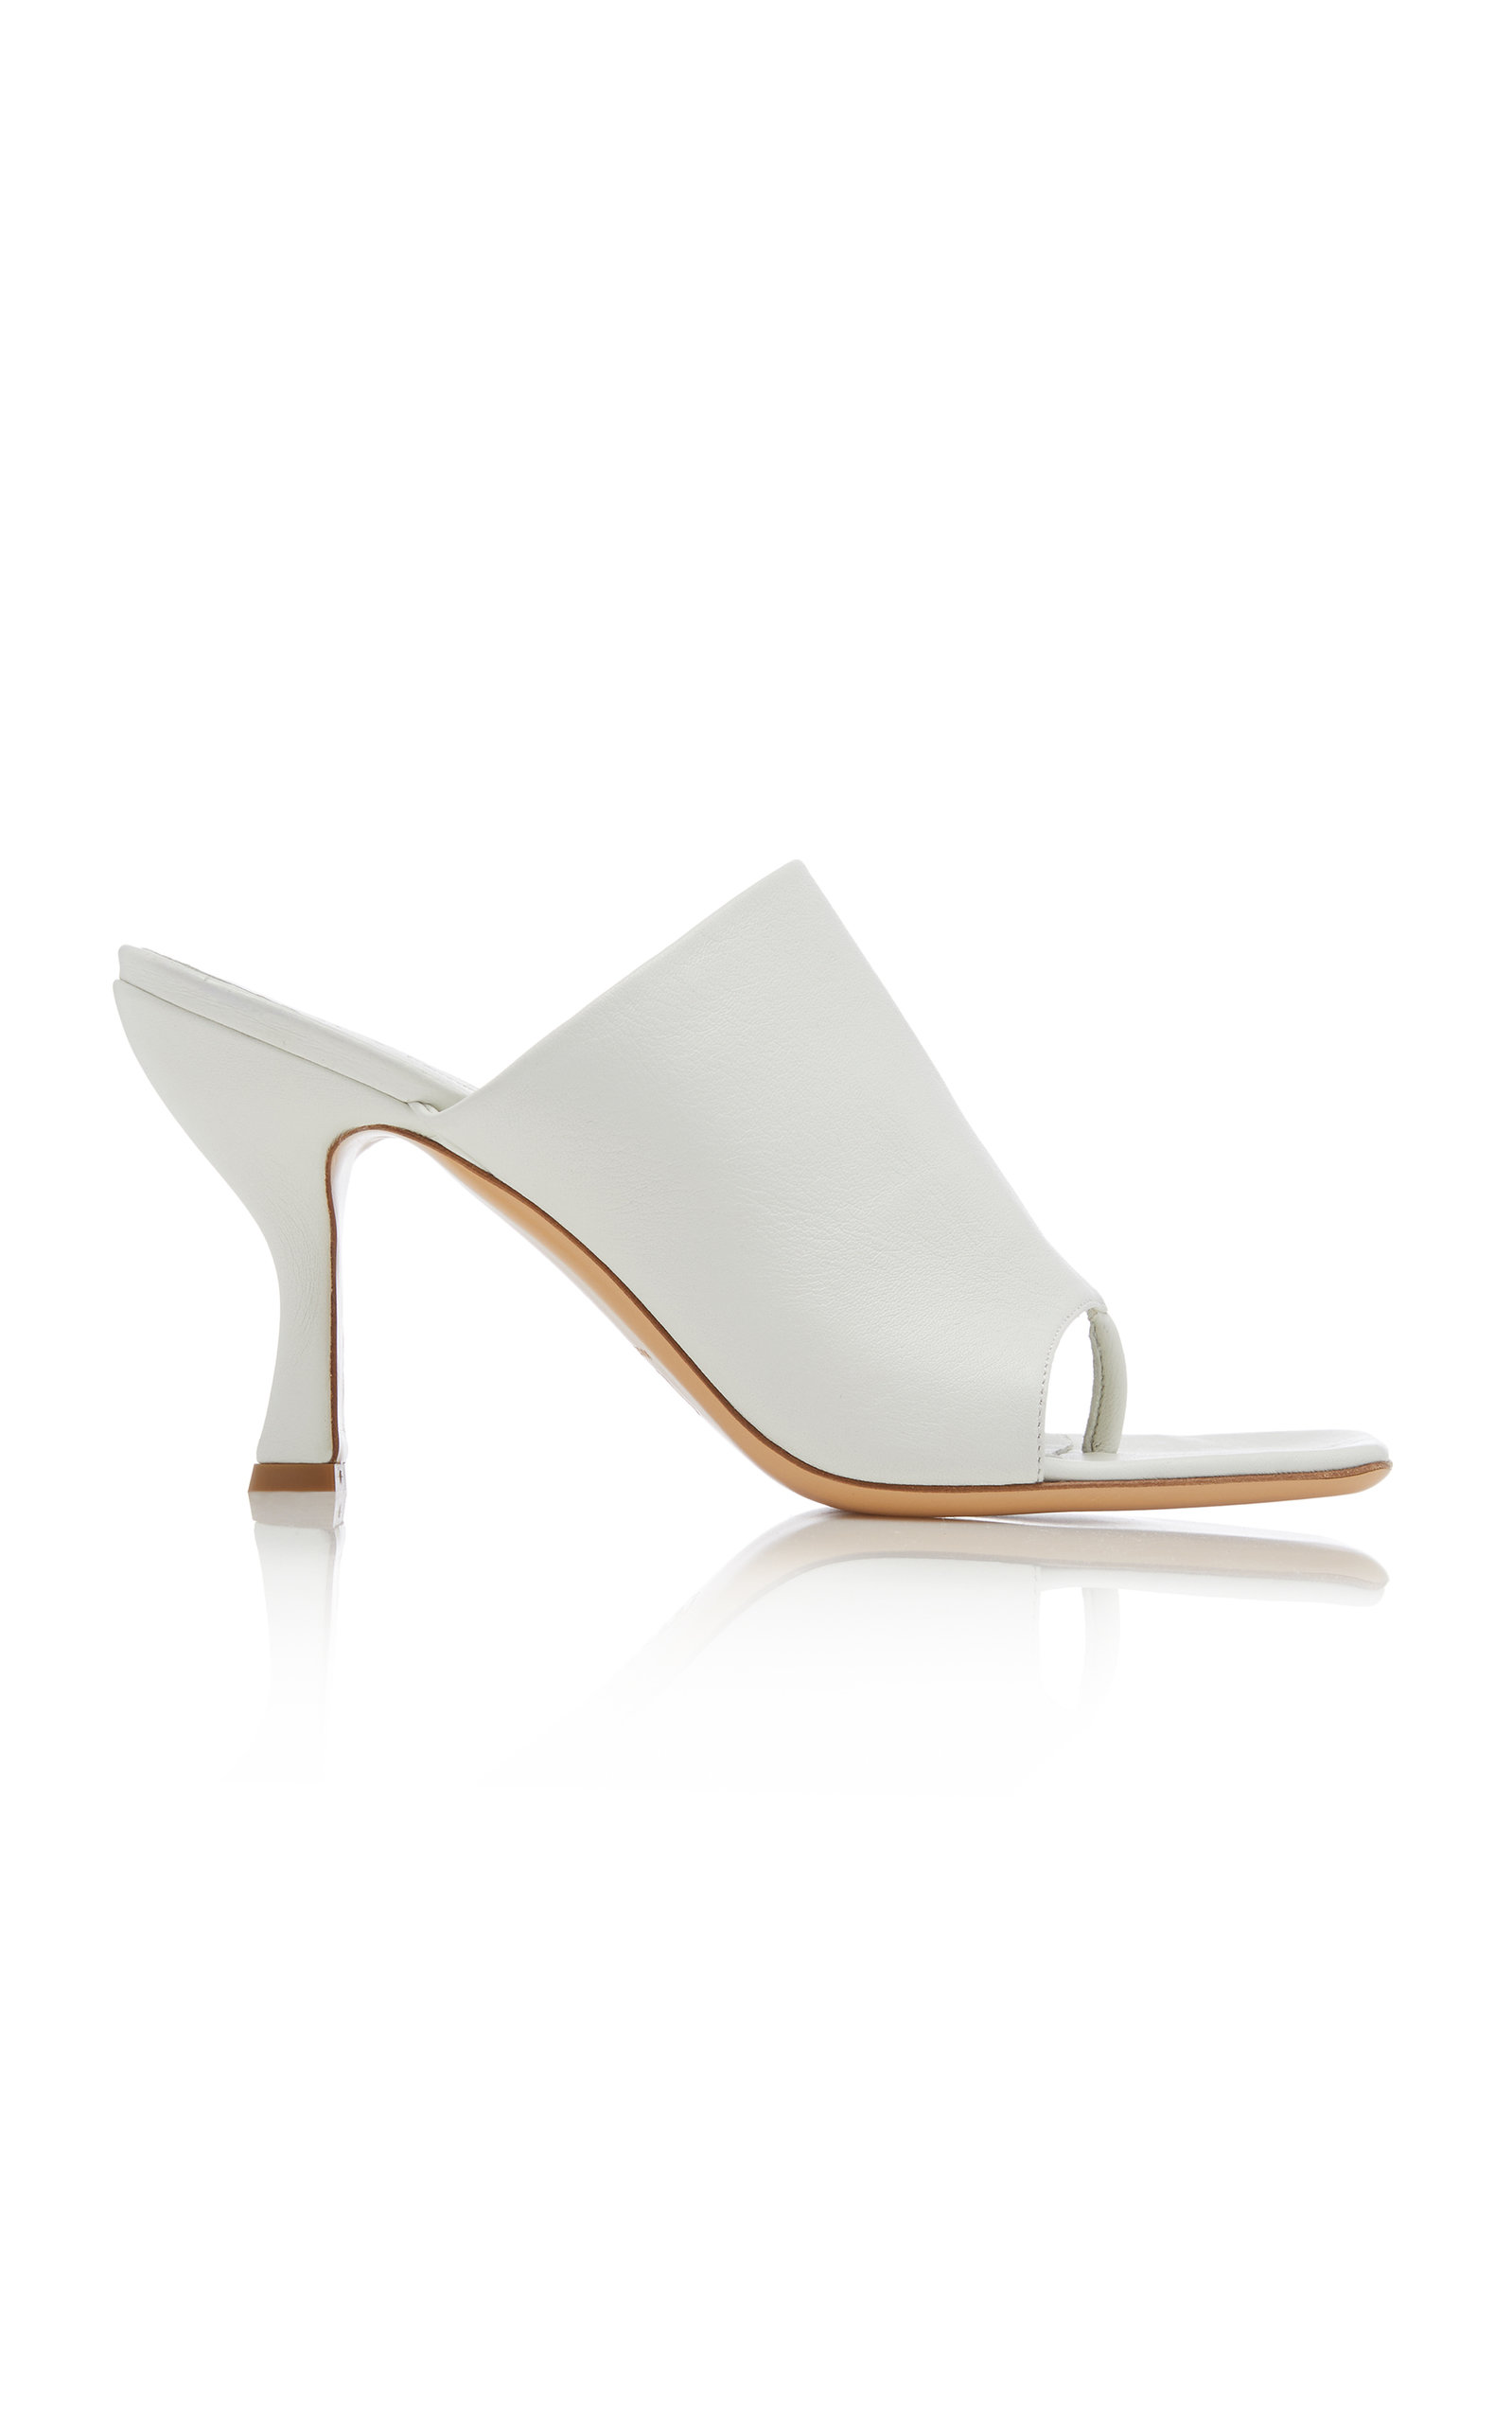 GIA x Pernille Teisbaek - Women's Leather Sandals - White/tan - Moda Operandi